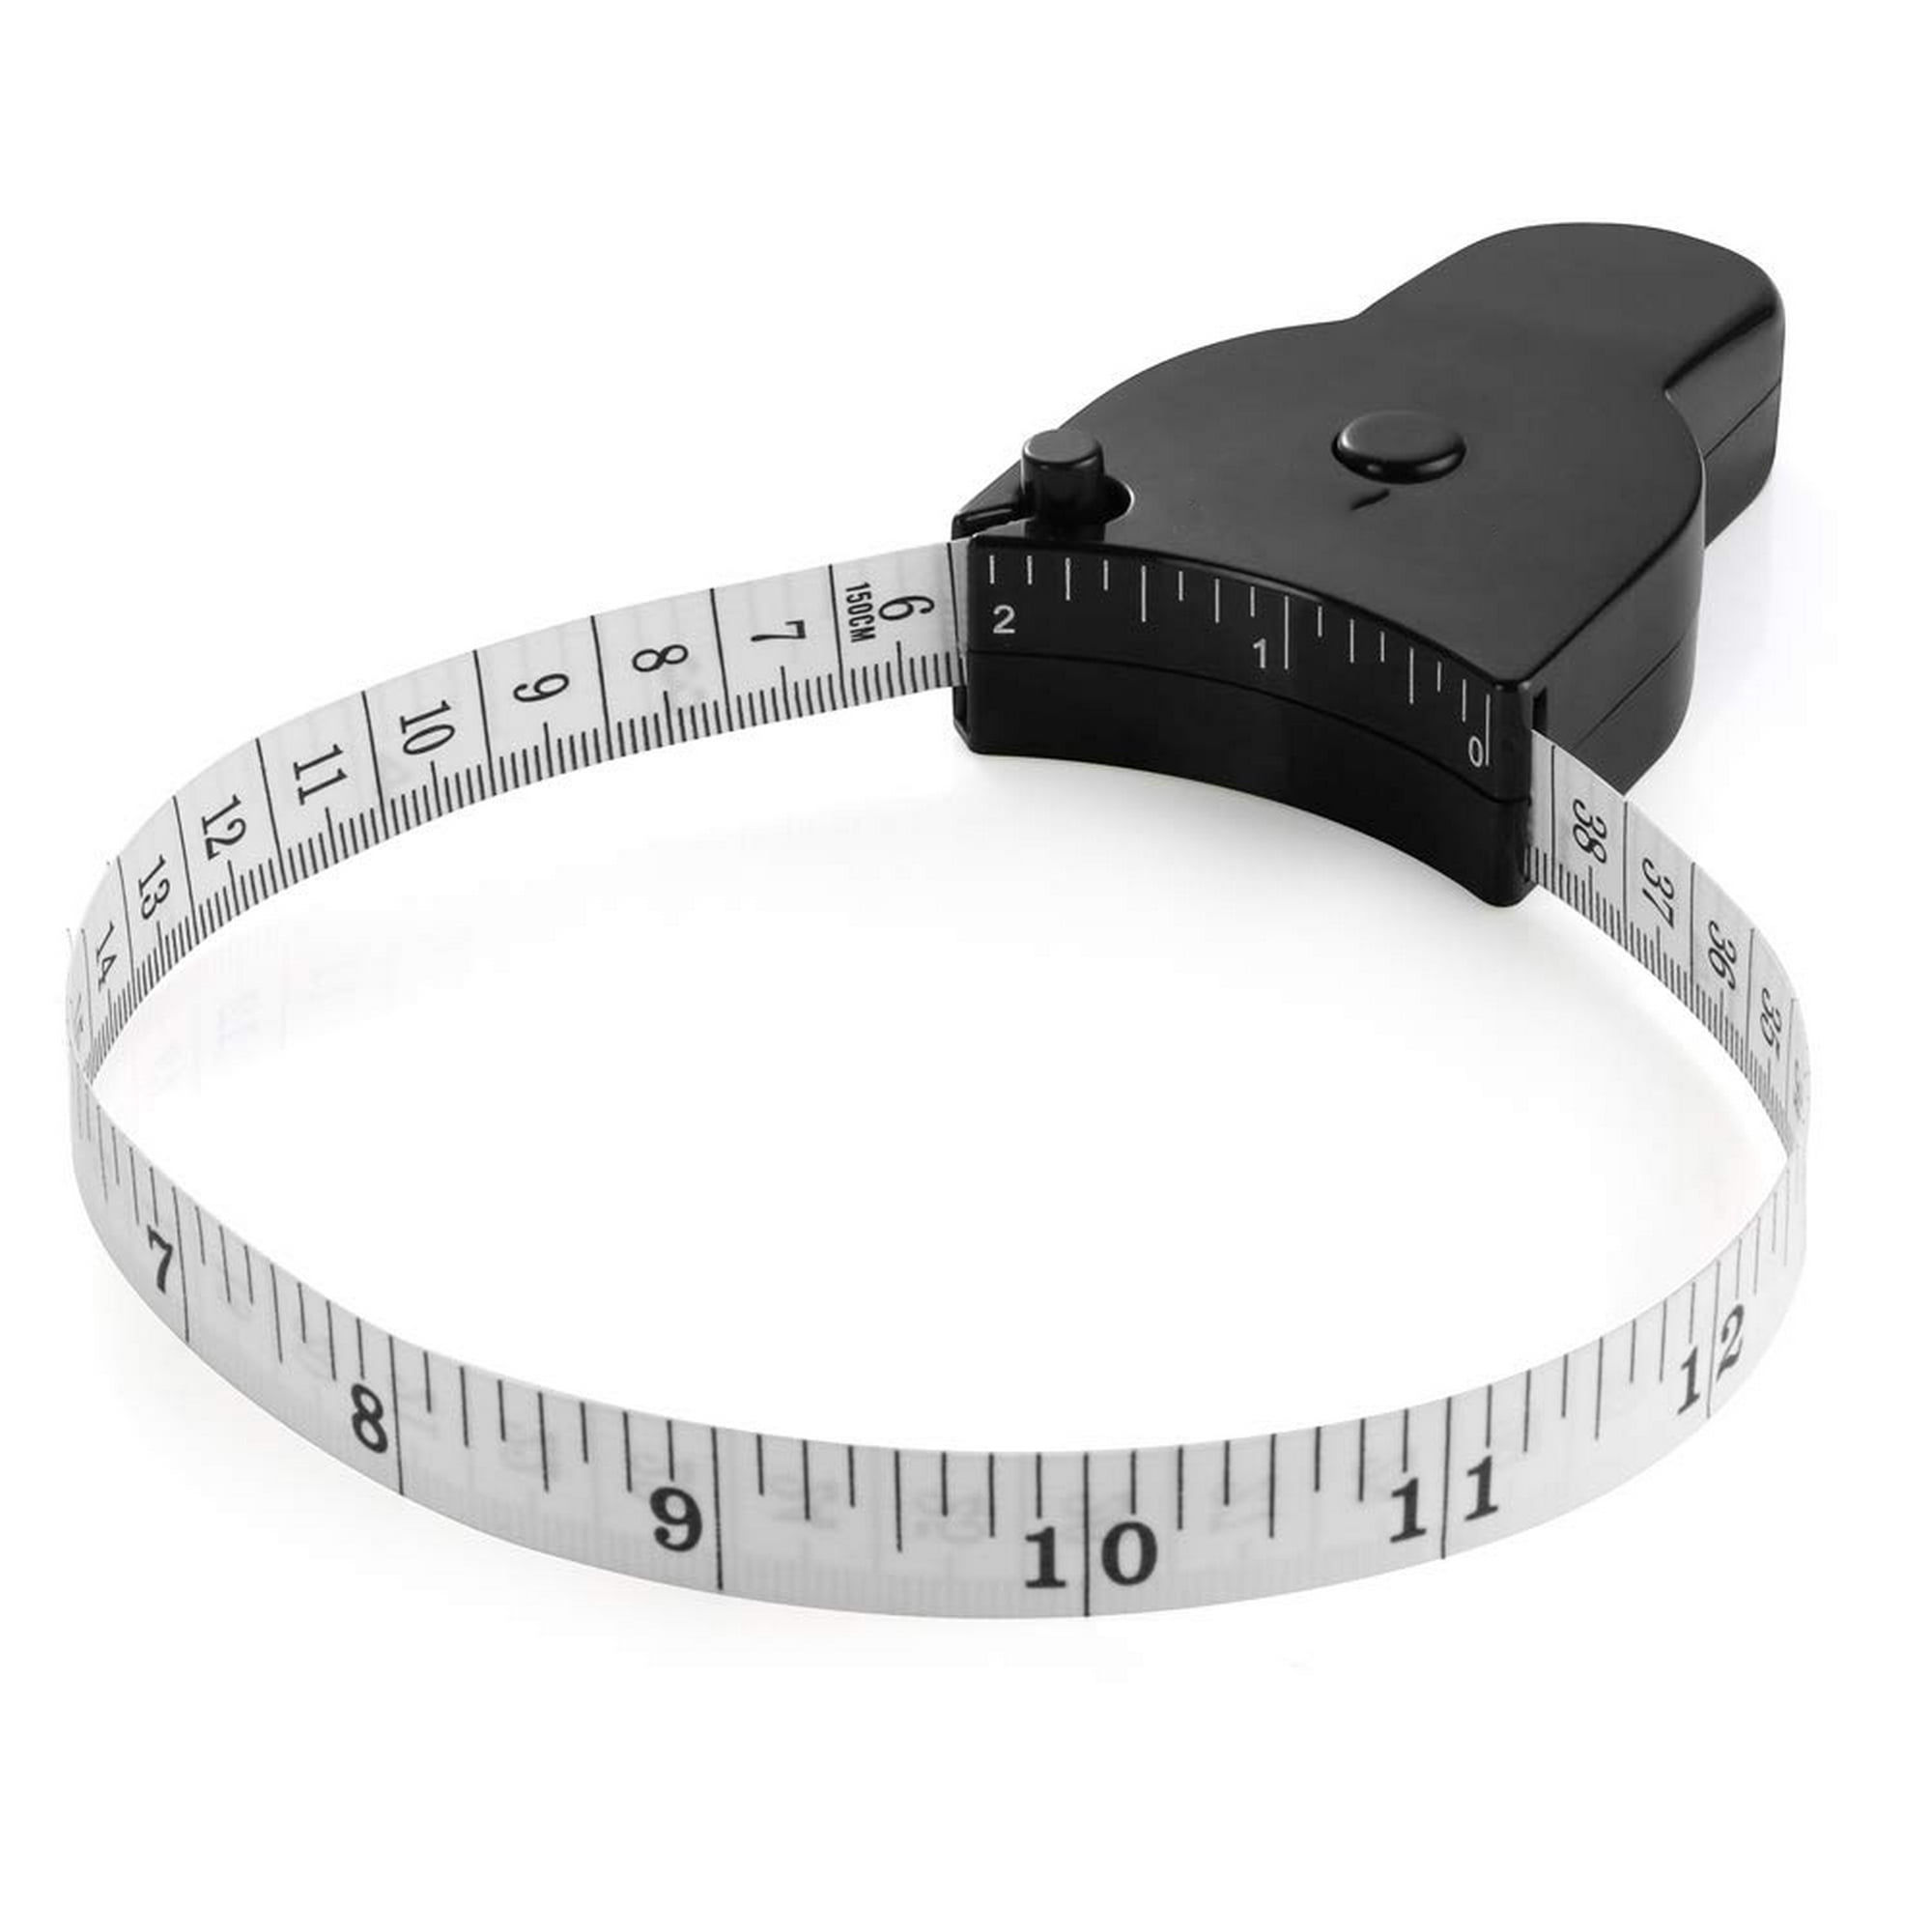 Cinta métrica corporal de 60 pulgadas (150 cm), pasador de bloqueo y botón  de retracción, diseño ergonómico; cintas medidoras duraderas para medición